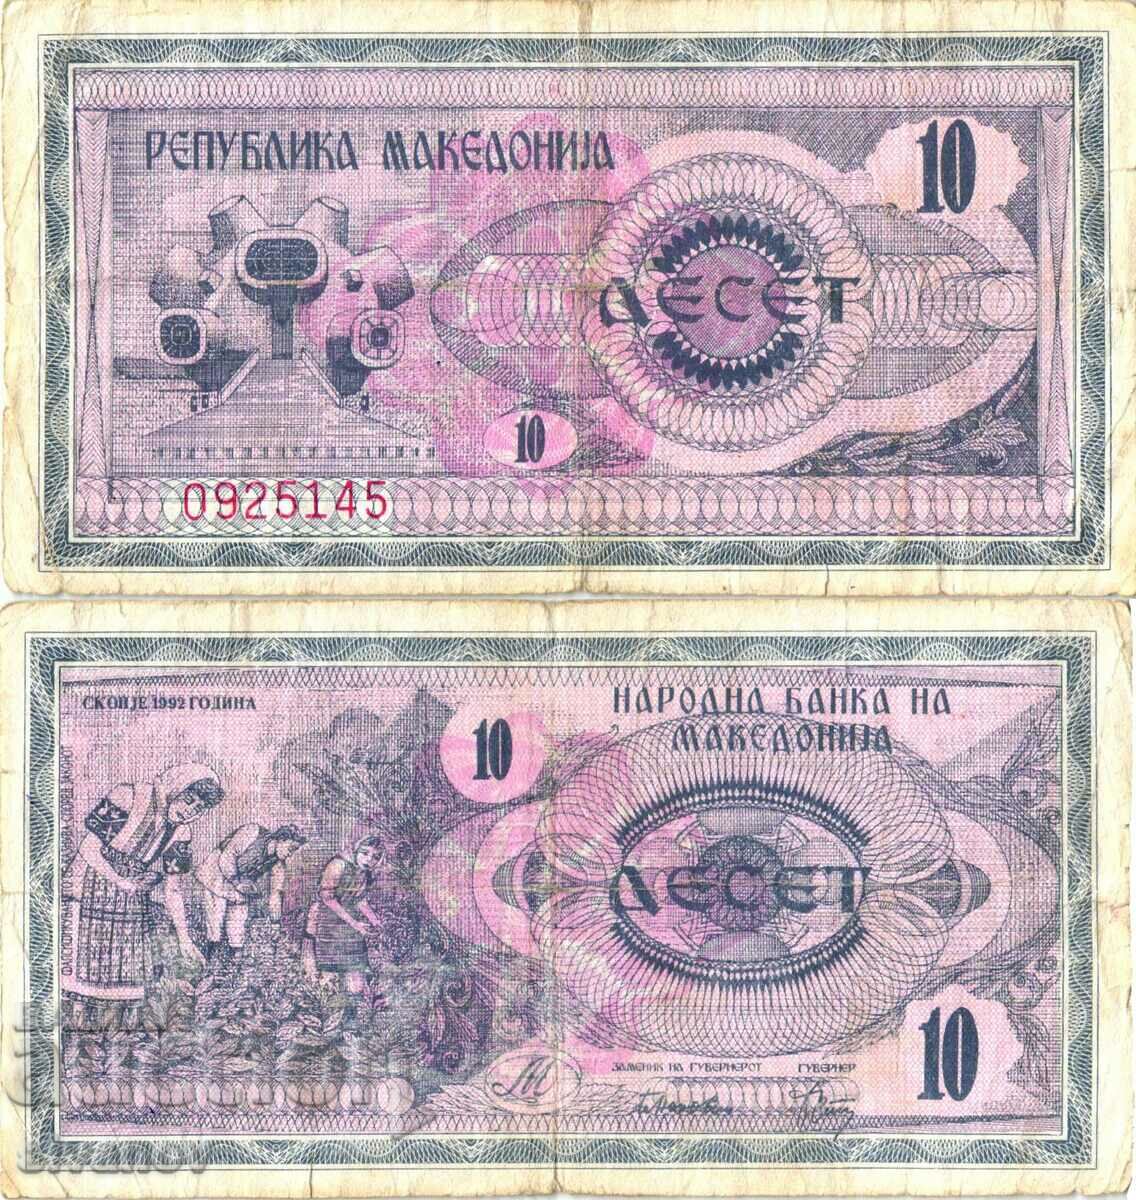 Μακεδονία 10 denar 1992 #4278